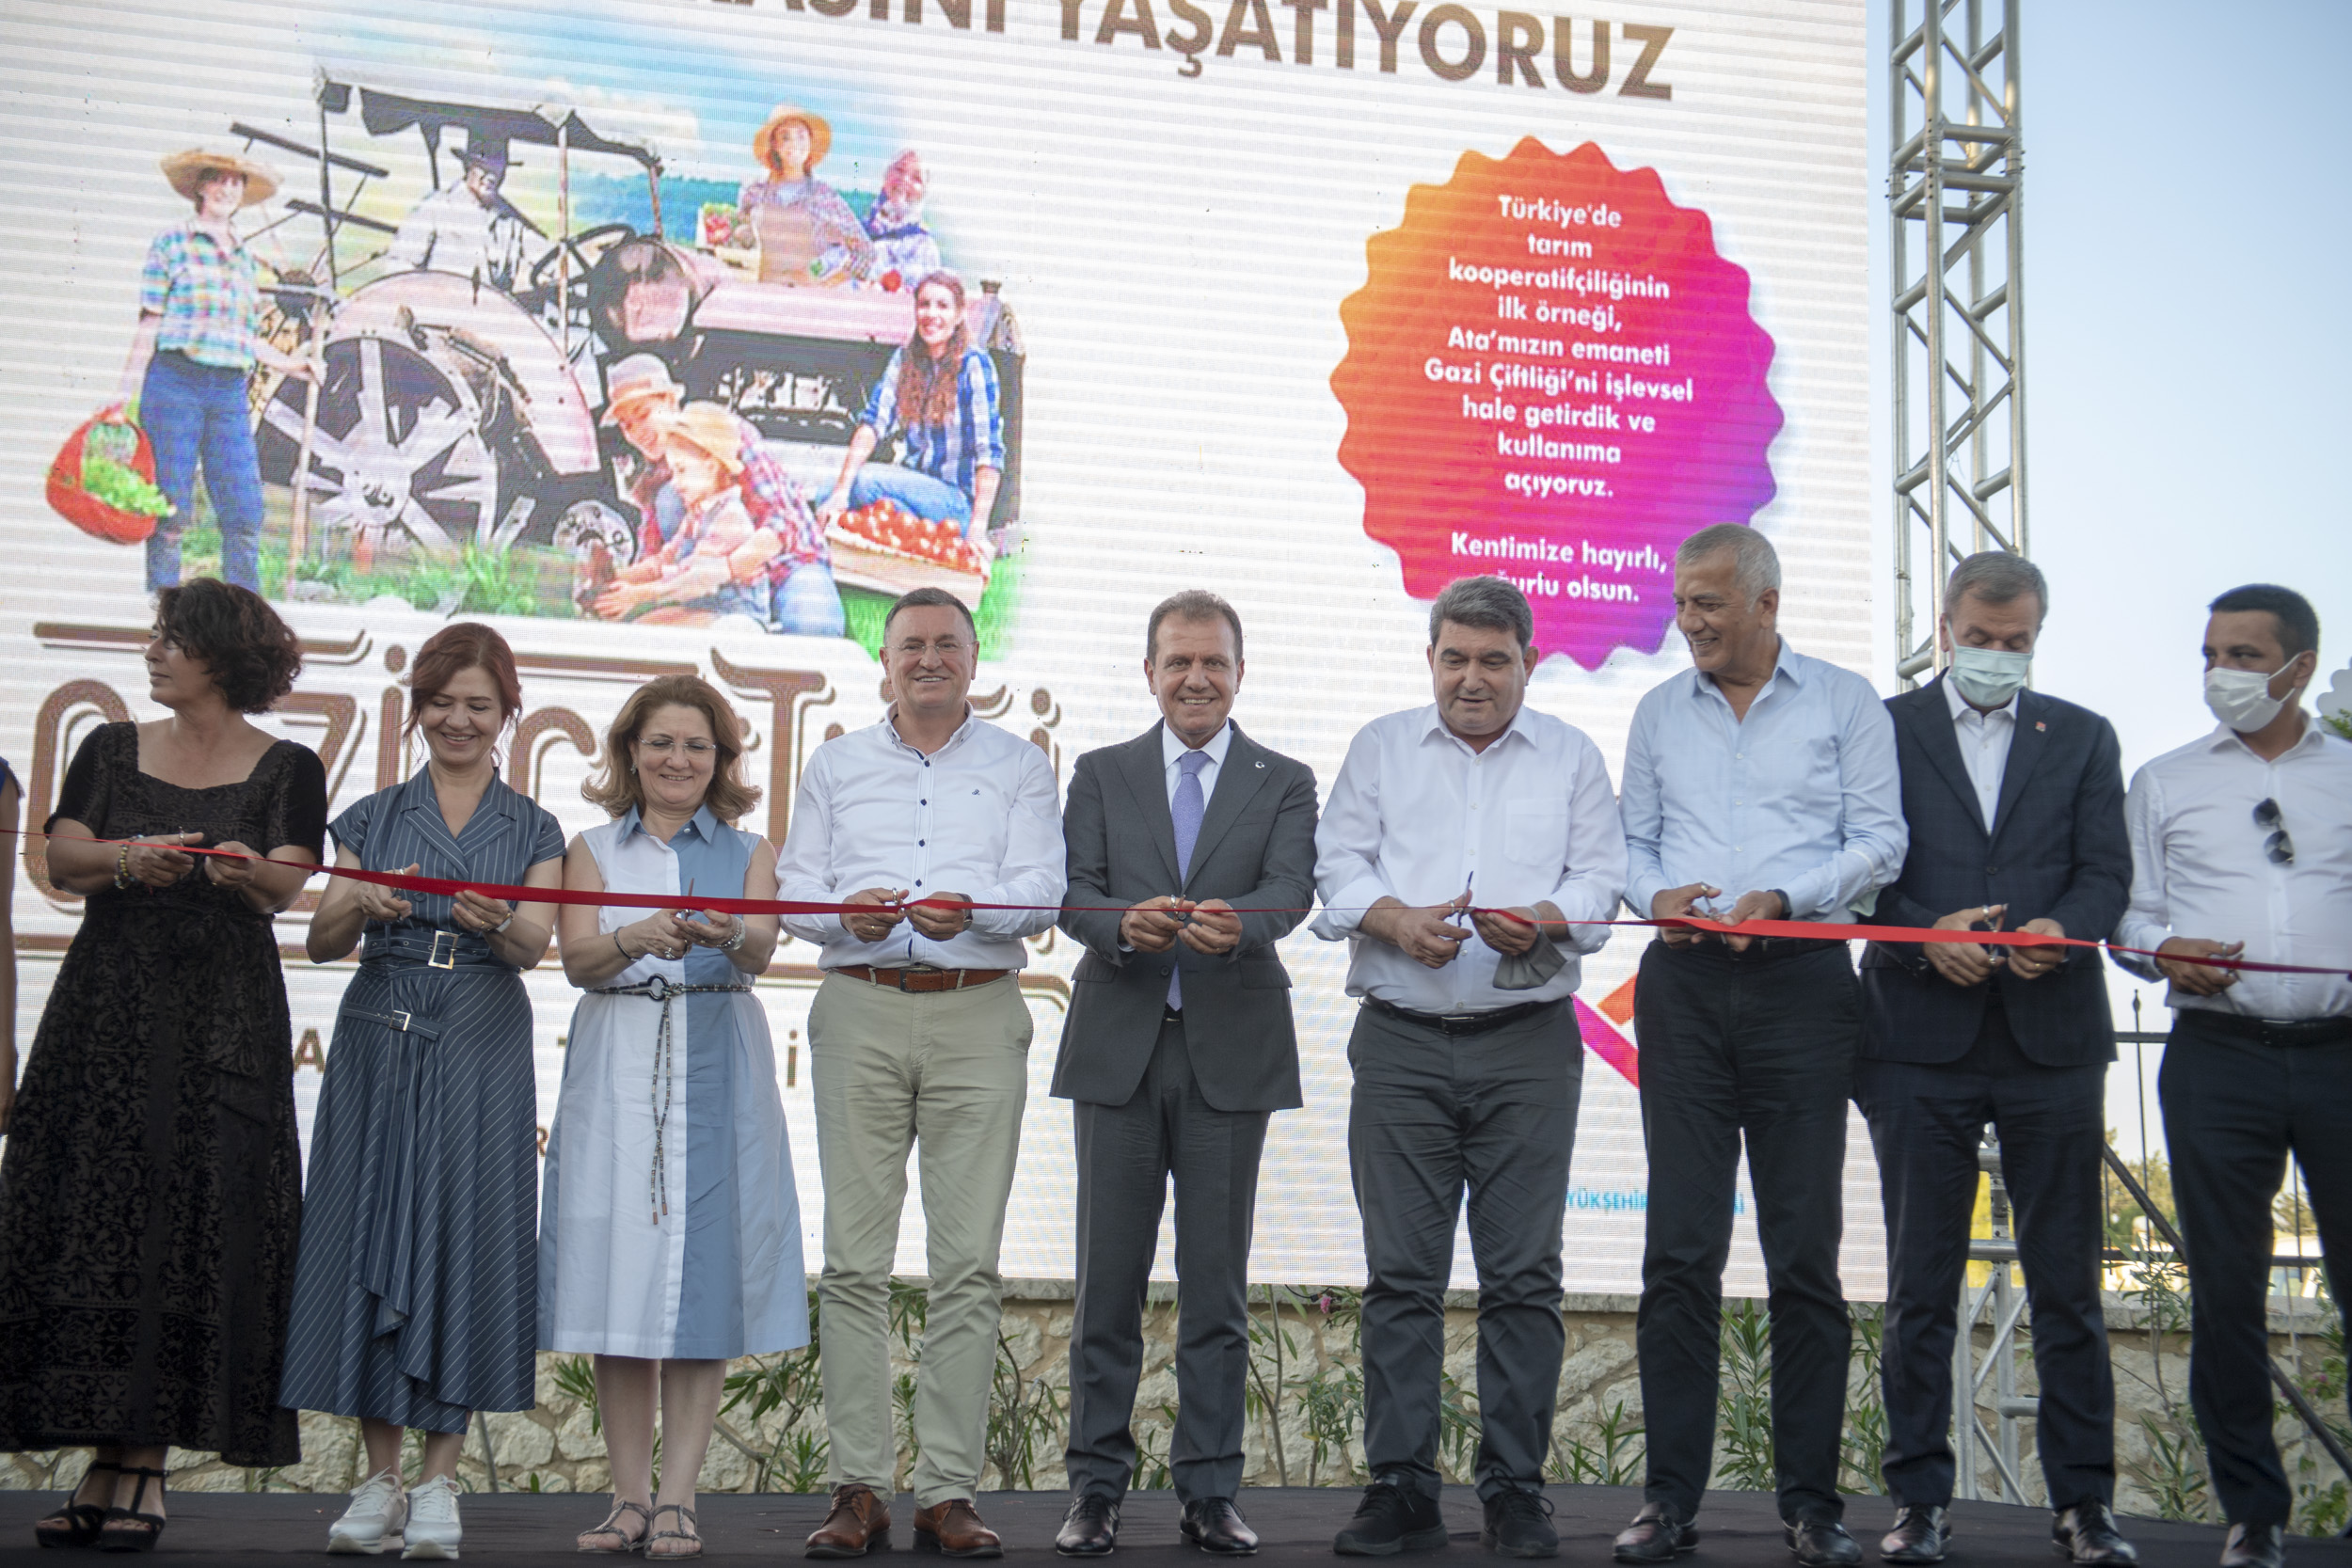  Mersin Büyükşehir, Atatürk’ün Mirası Gazi Çiftliği’nin Açılışını Yaptı